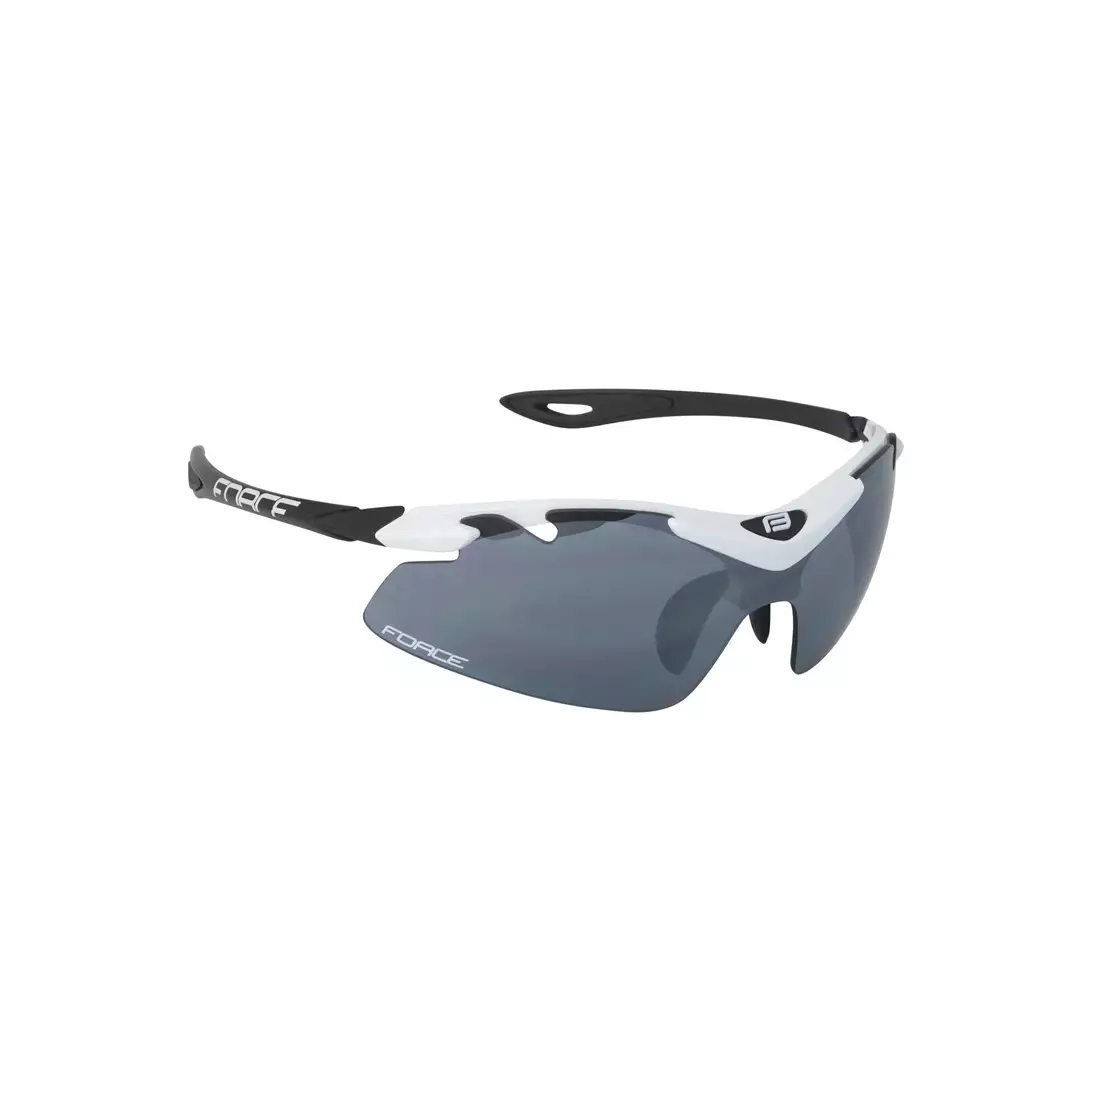 Ochelari FORCE DUKE cu lentile interschimbabile, alb si negru 91021